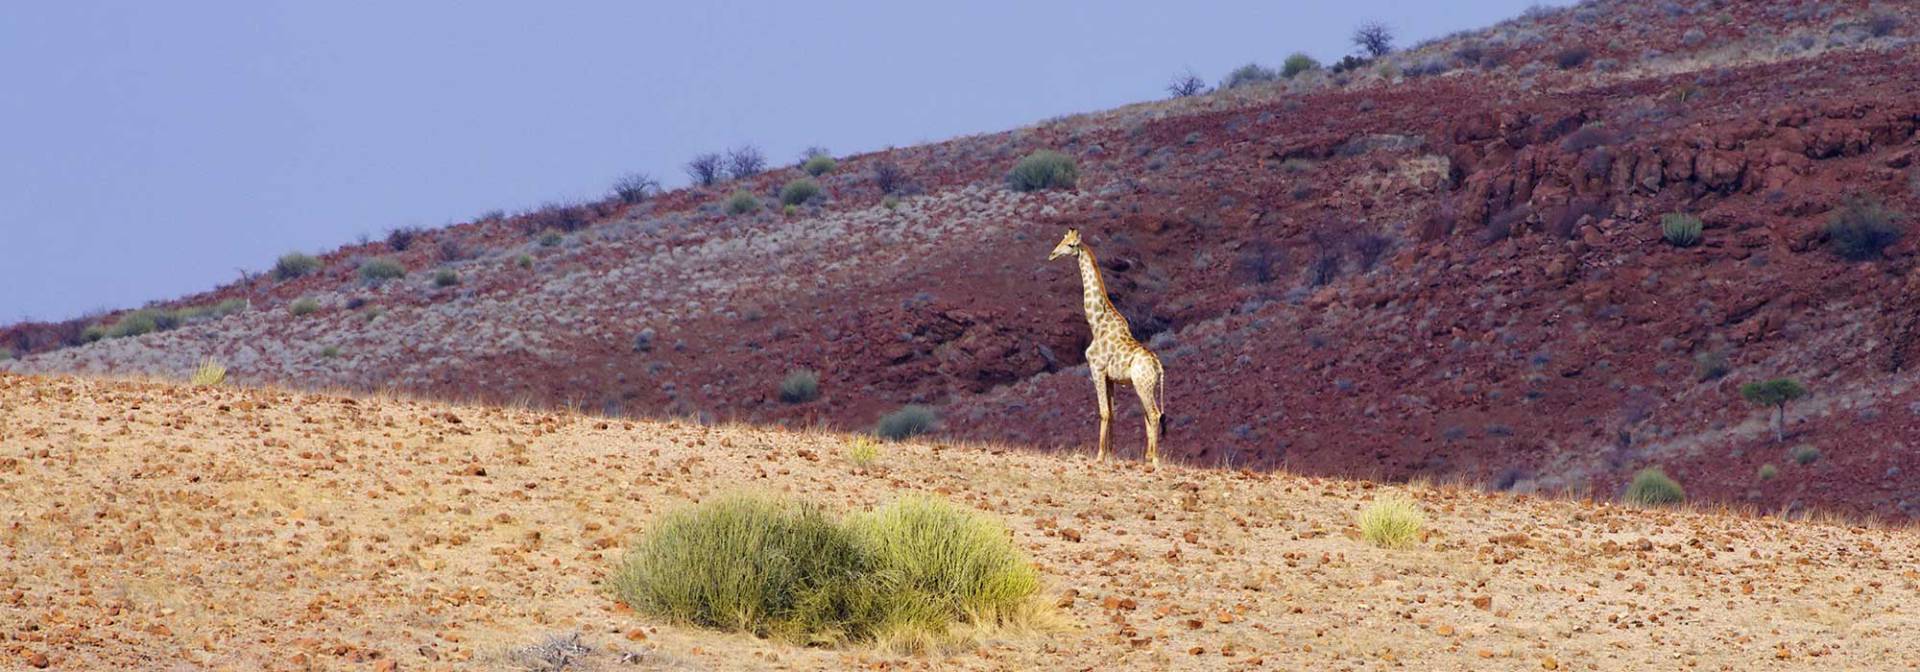 Giraffe im Kaokoveld